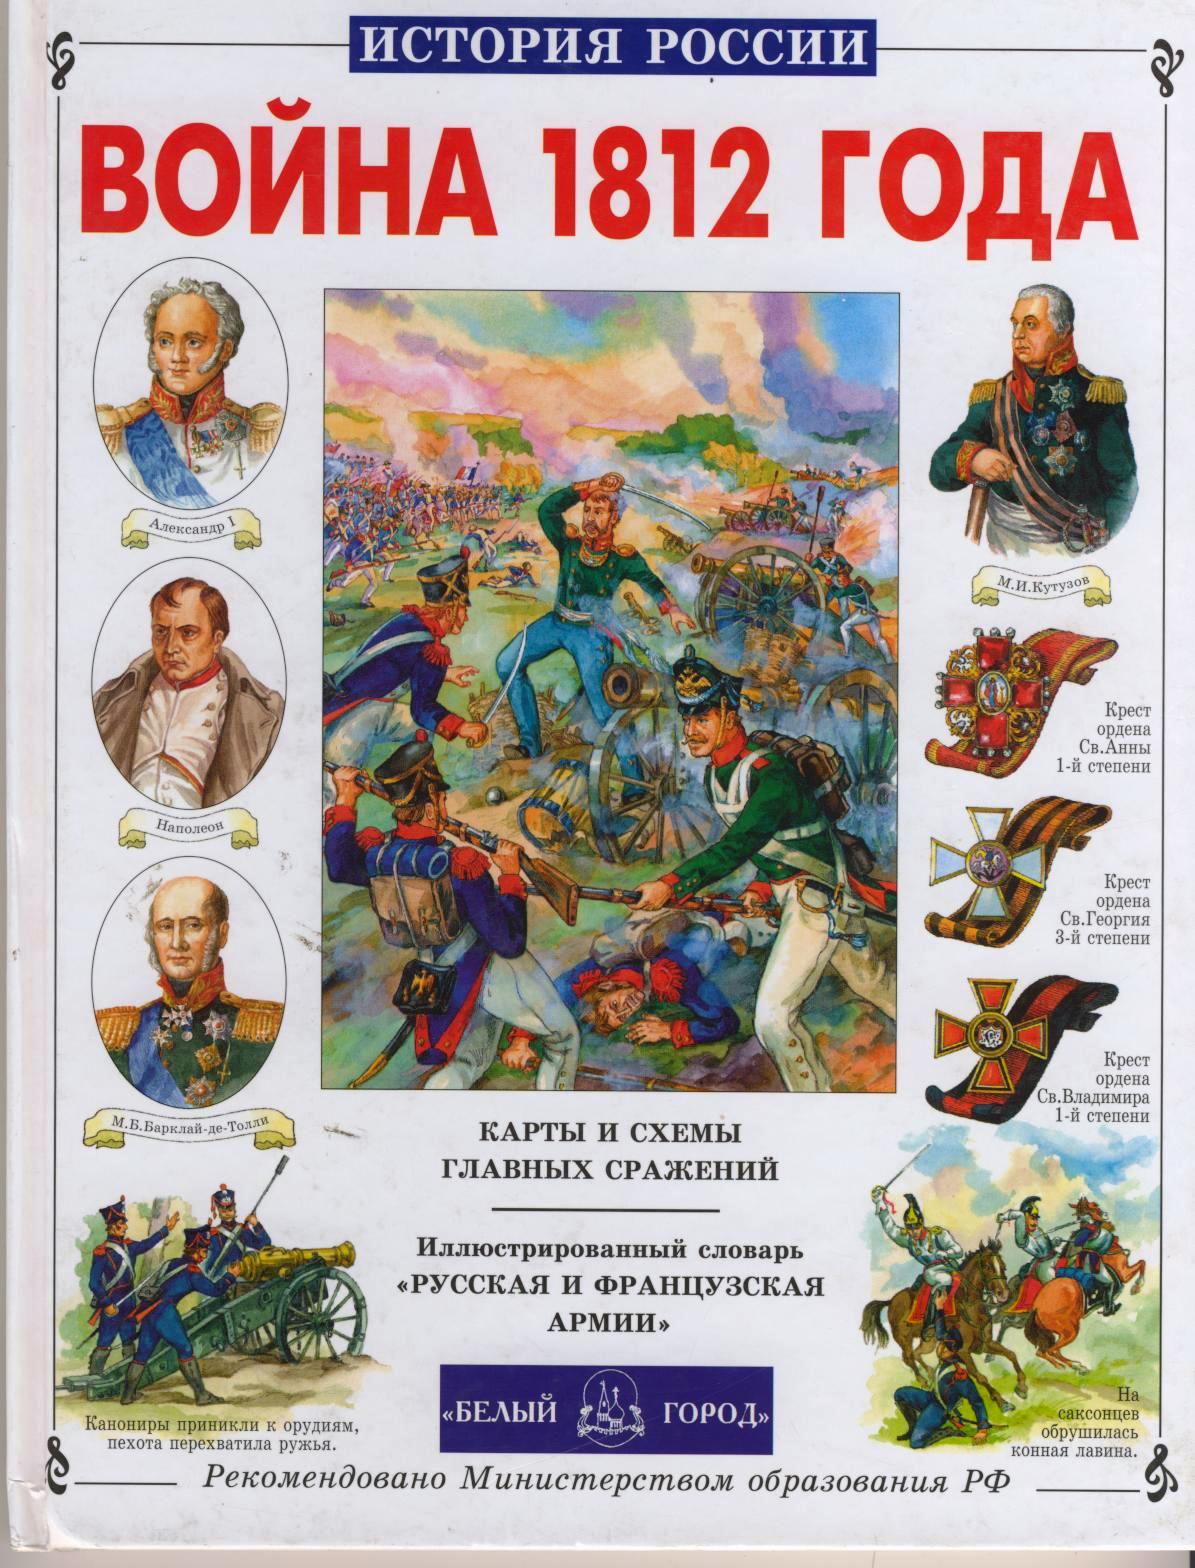 Русские книги про героев. Книги про отечественную войну 1812 года. Герои 1812 г. книга.белый город.